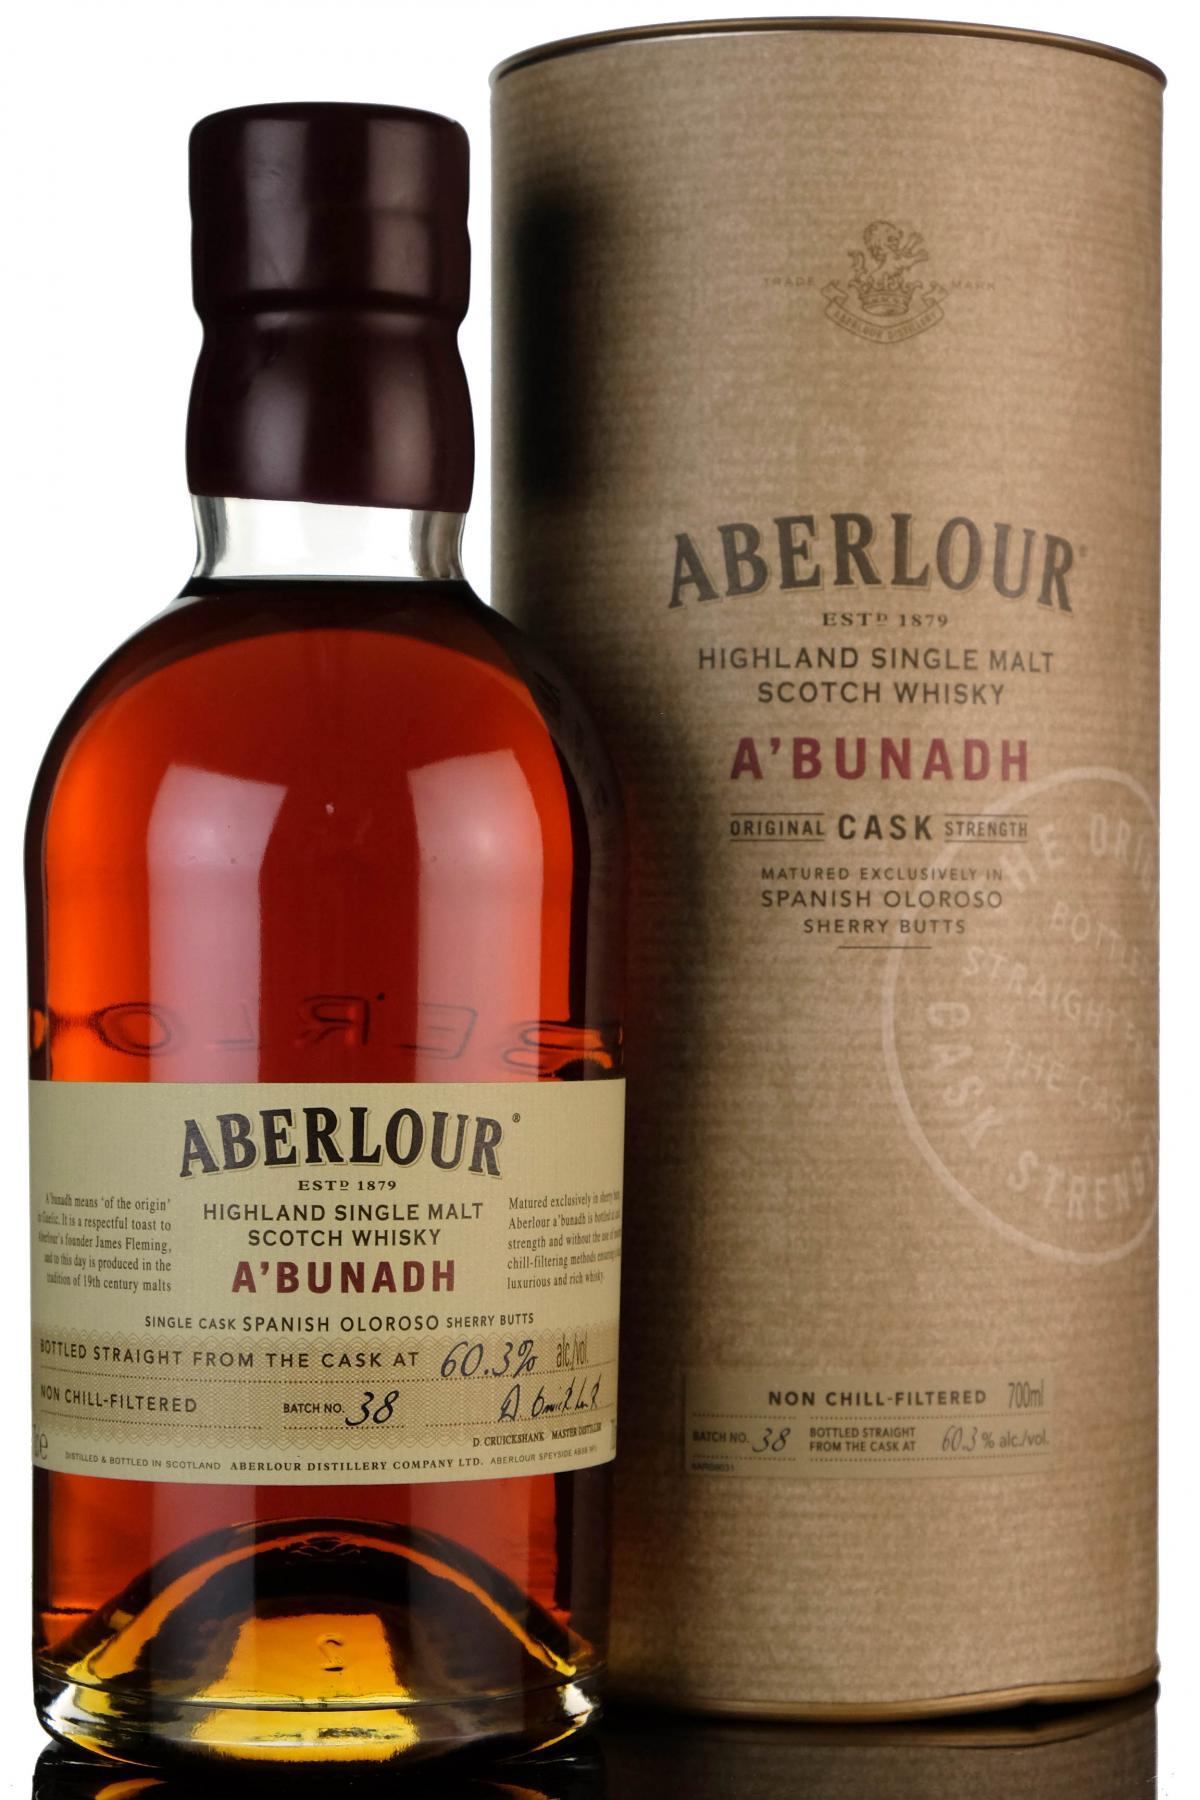 Aberlour Abunadh - Batch 38